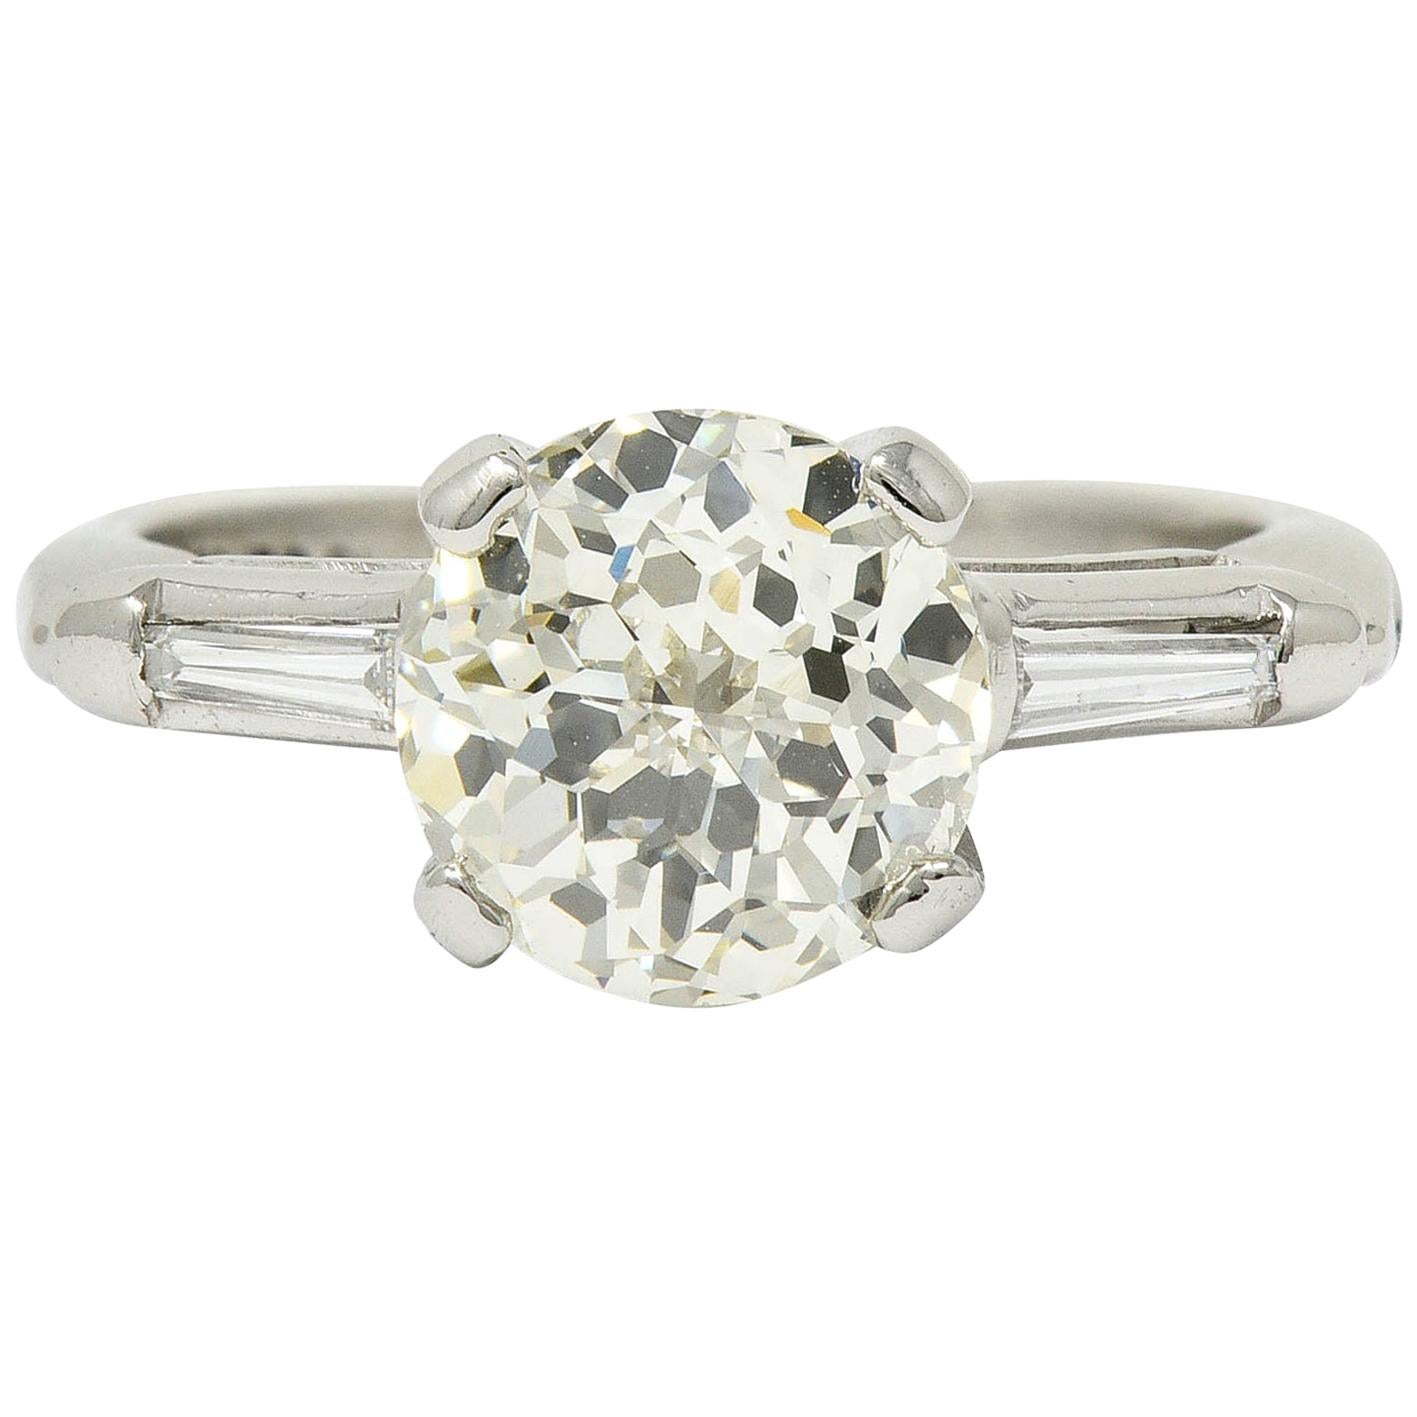 1.82 Carat Jubilee Cut Diamond Platinum Engagement Ring GIA